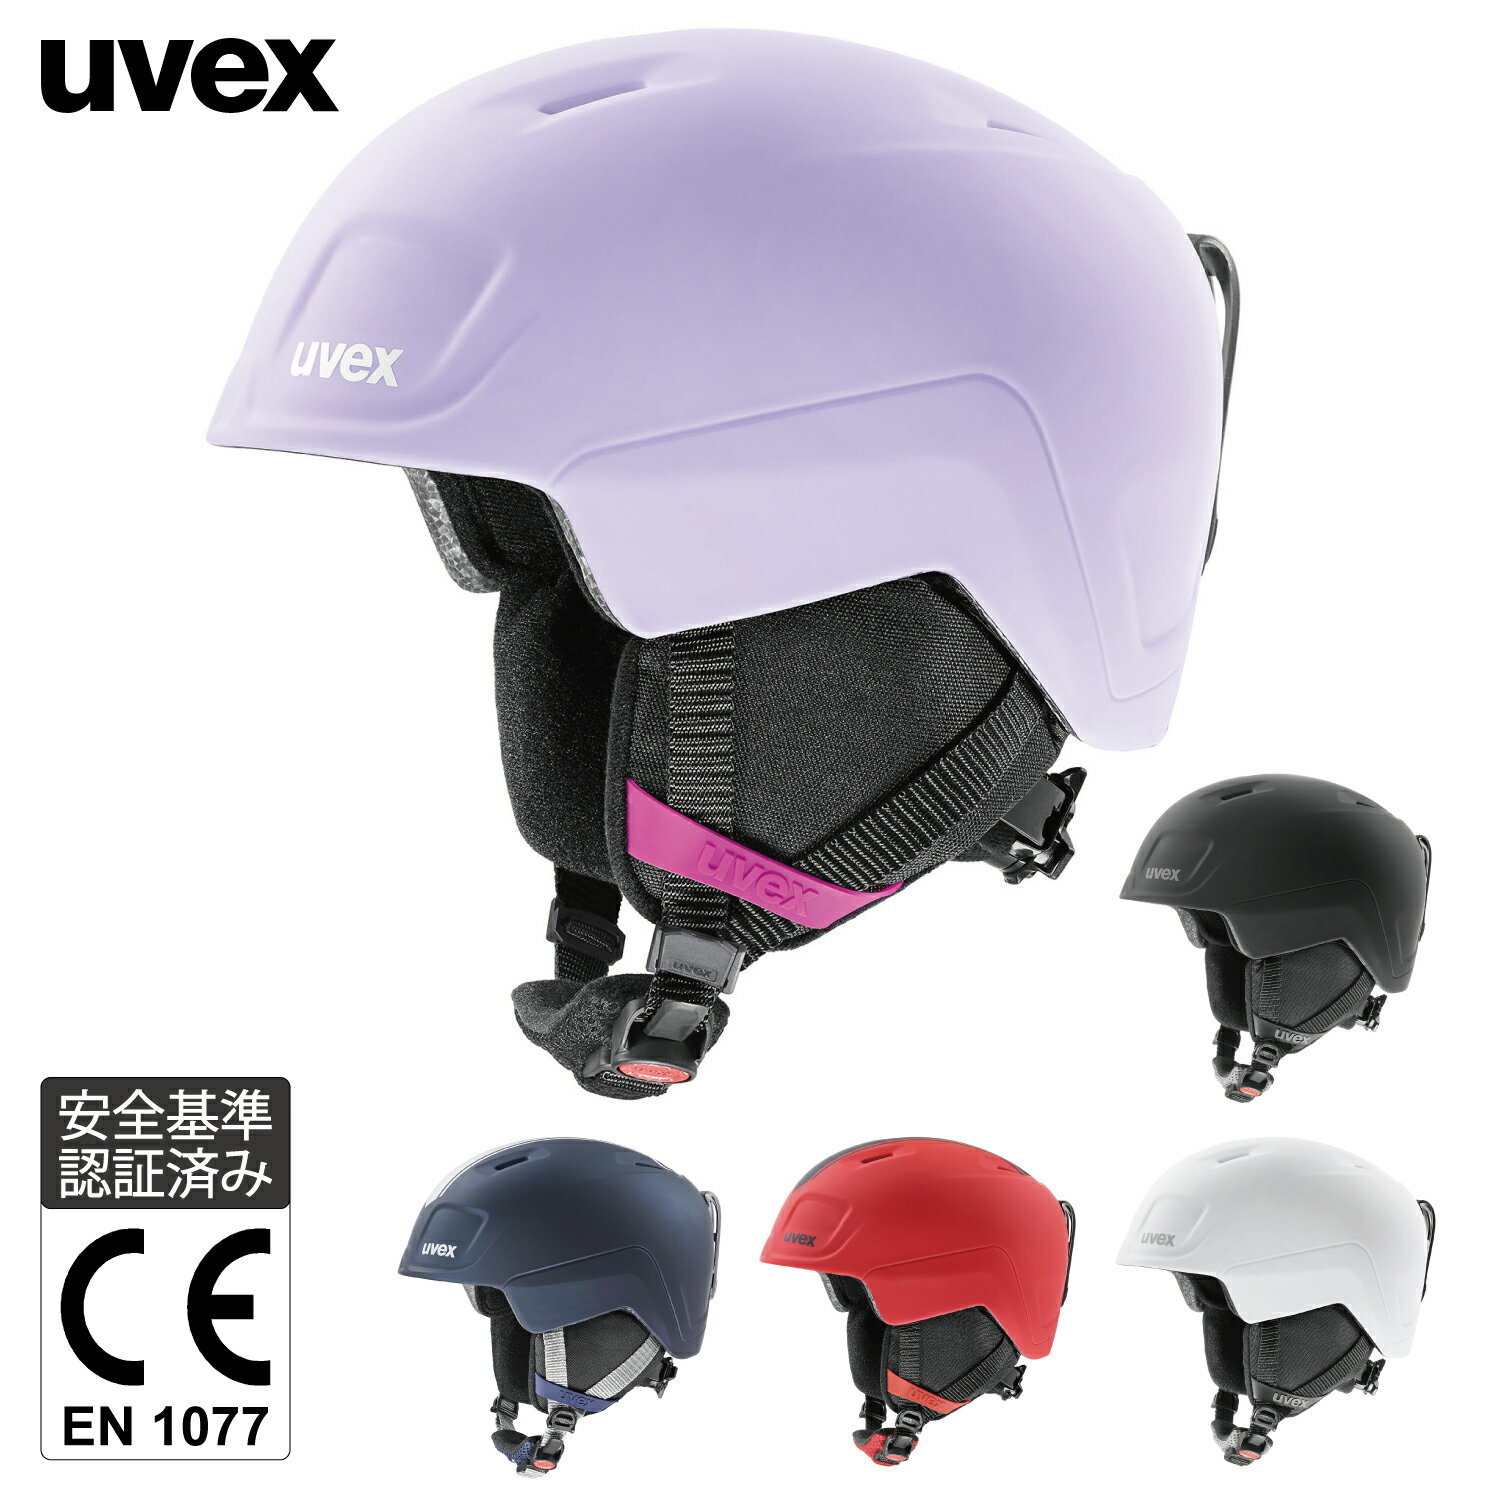 uvex ウベックス 子供用 スキー スノーボード ヘルメット マットカラー ダイヤル式サイズ調整 heyya pro サイズ 51-55cm 54-58cm